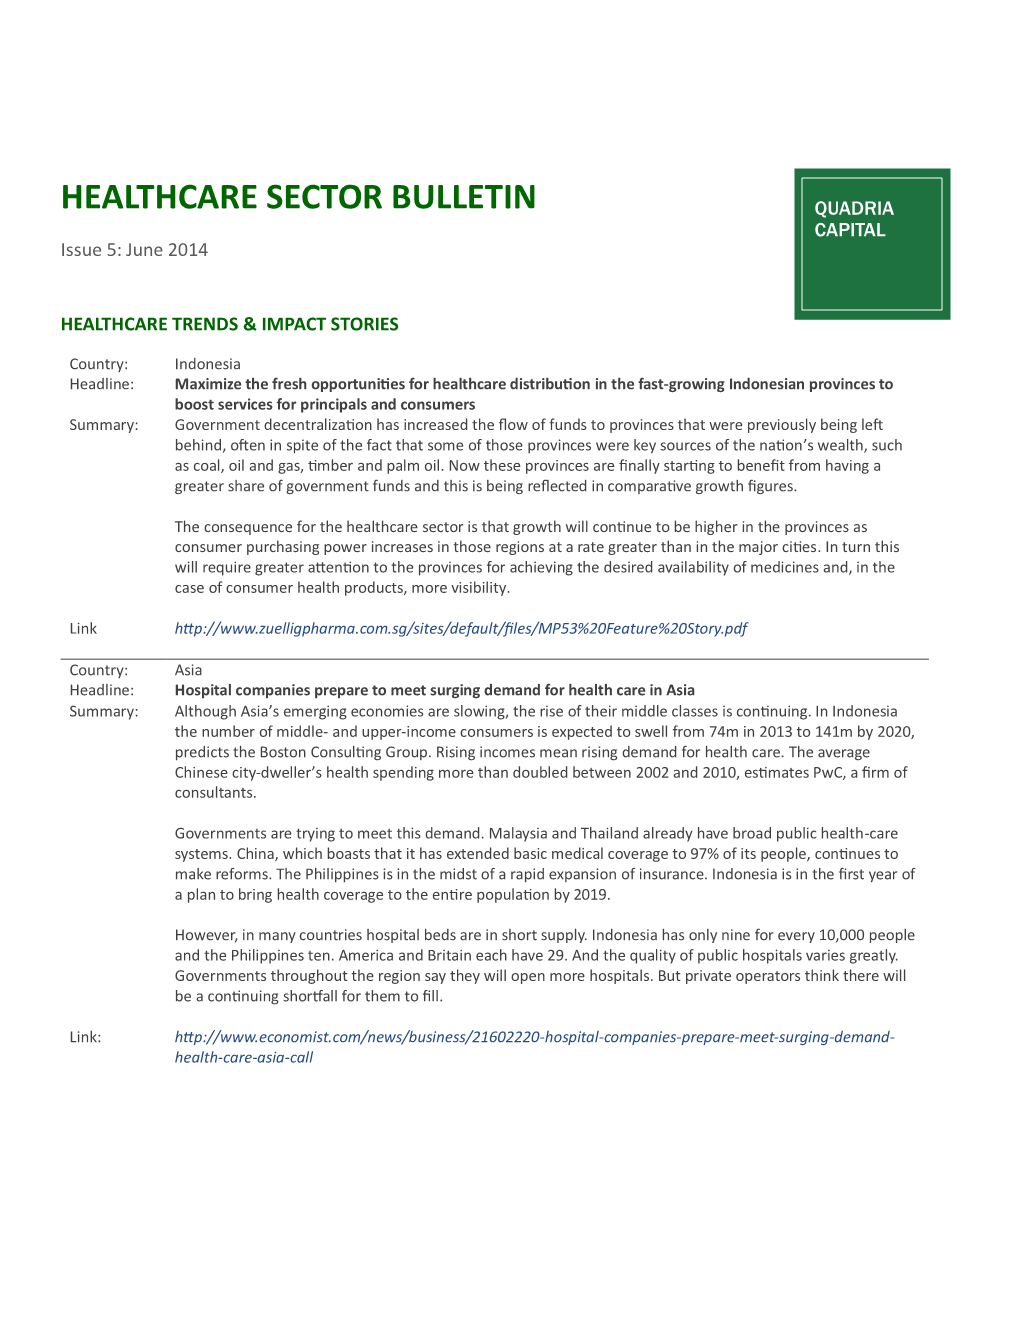 HEALTHCARE SECTOR BULLETIN QUADRIA CAPITAL Issue 5: June 2014